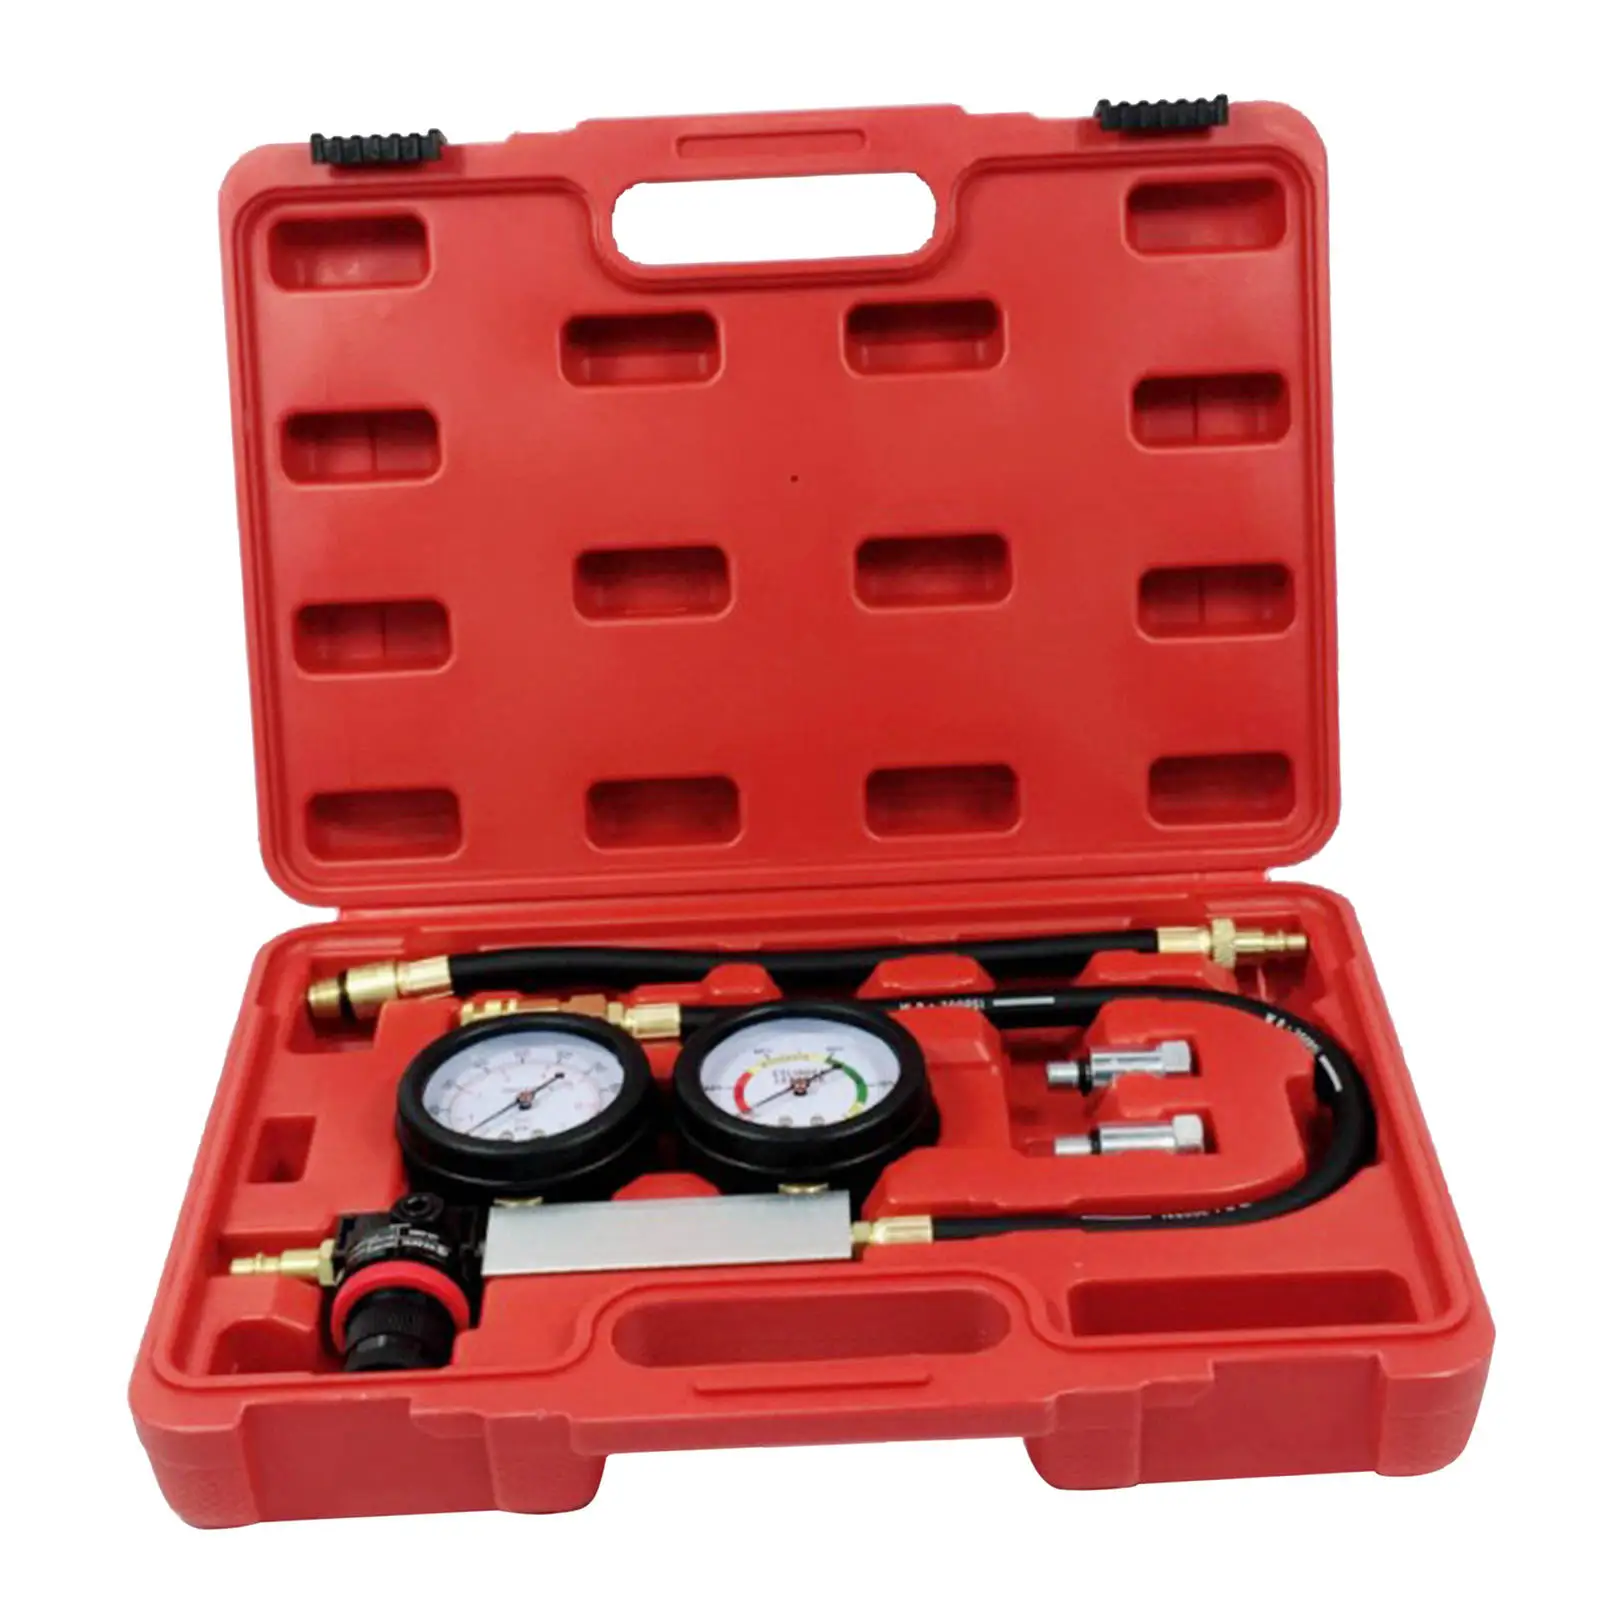 Vehicles Petrol Engine Cylinder Leak Down Tester Gauges 0-100PSI Compression Leakage Detector Kits + Case Diagnostics Tool